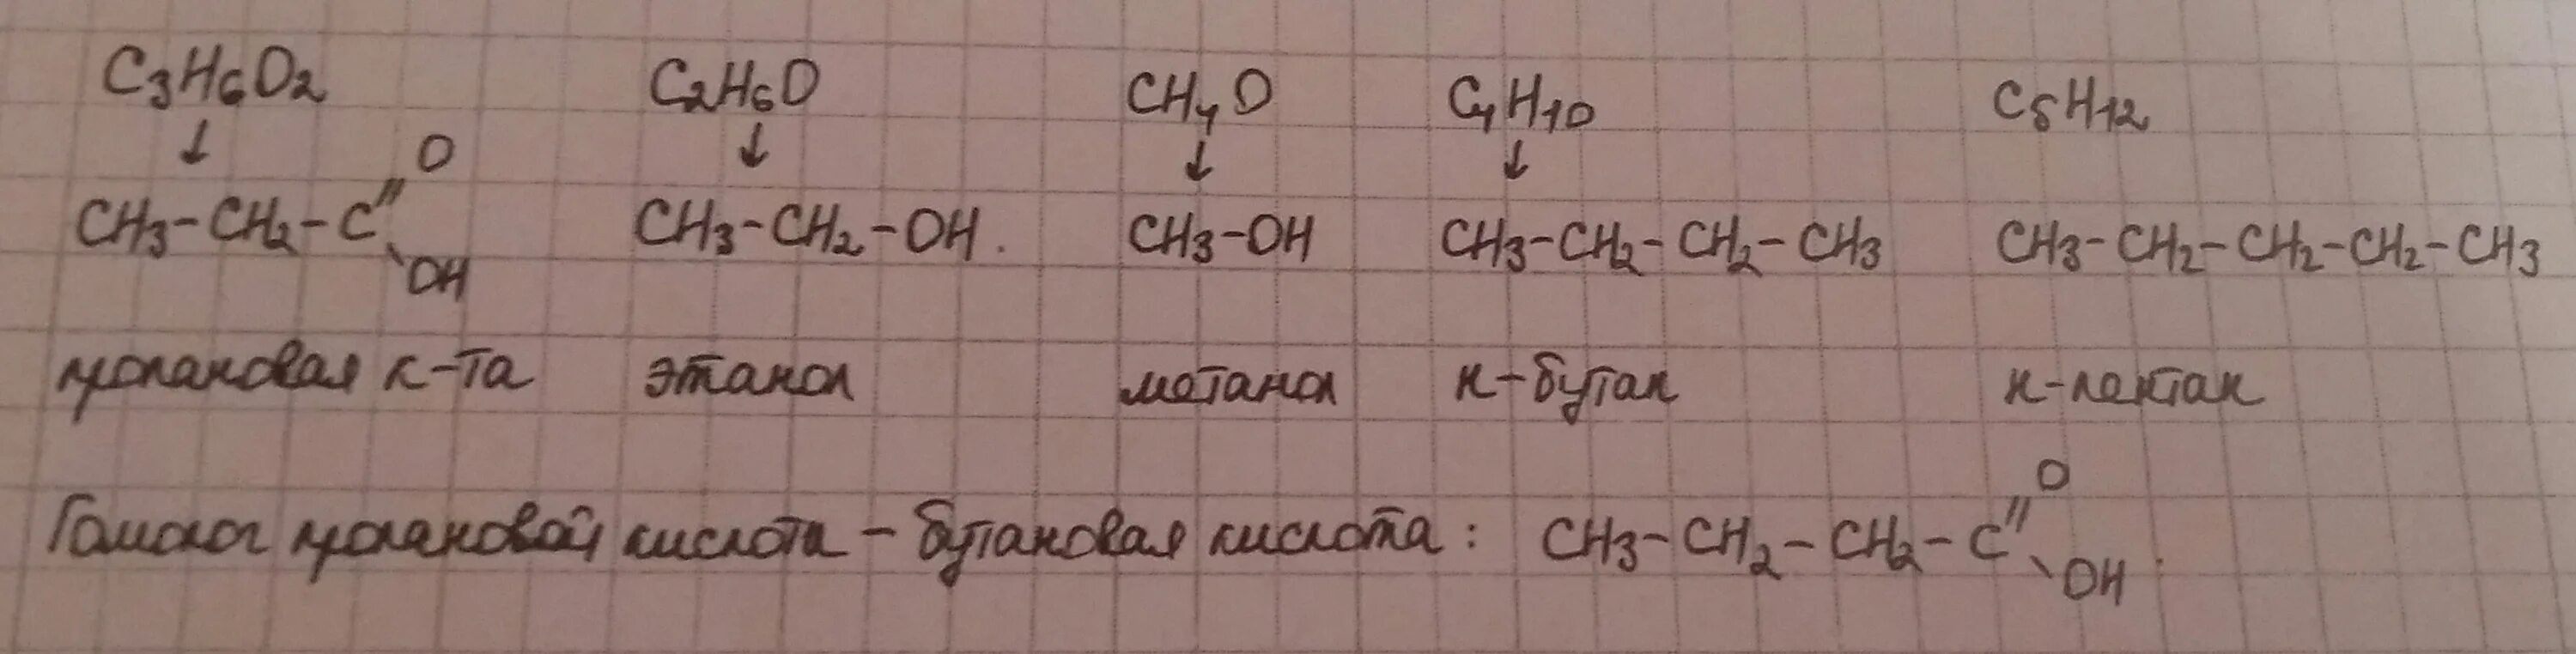 C3h6o2 структурная формула. C2h6o структурная формула. C4h6o2 структурная формула. C2h4o формула.